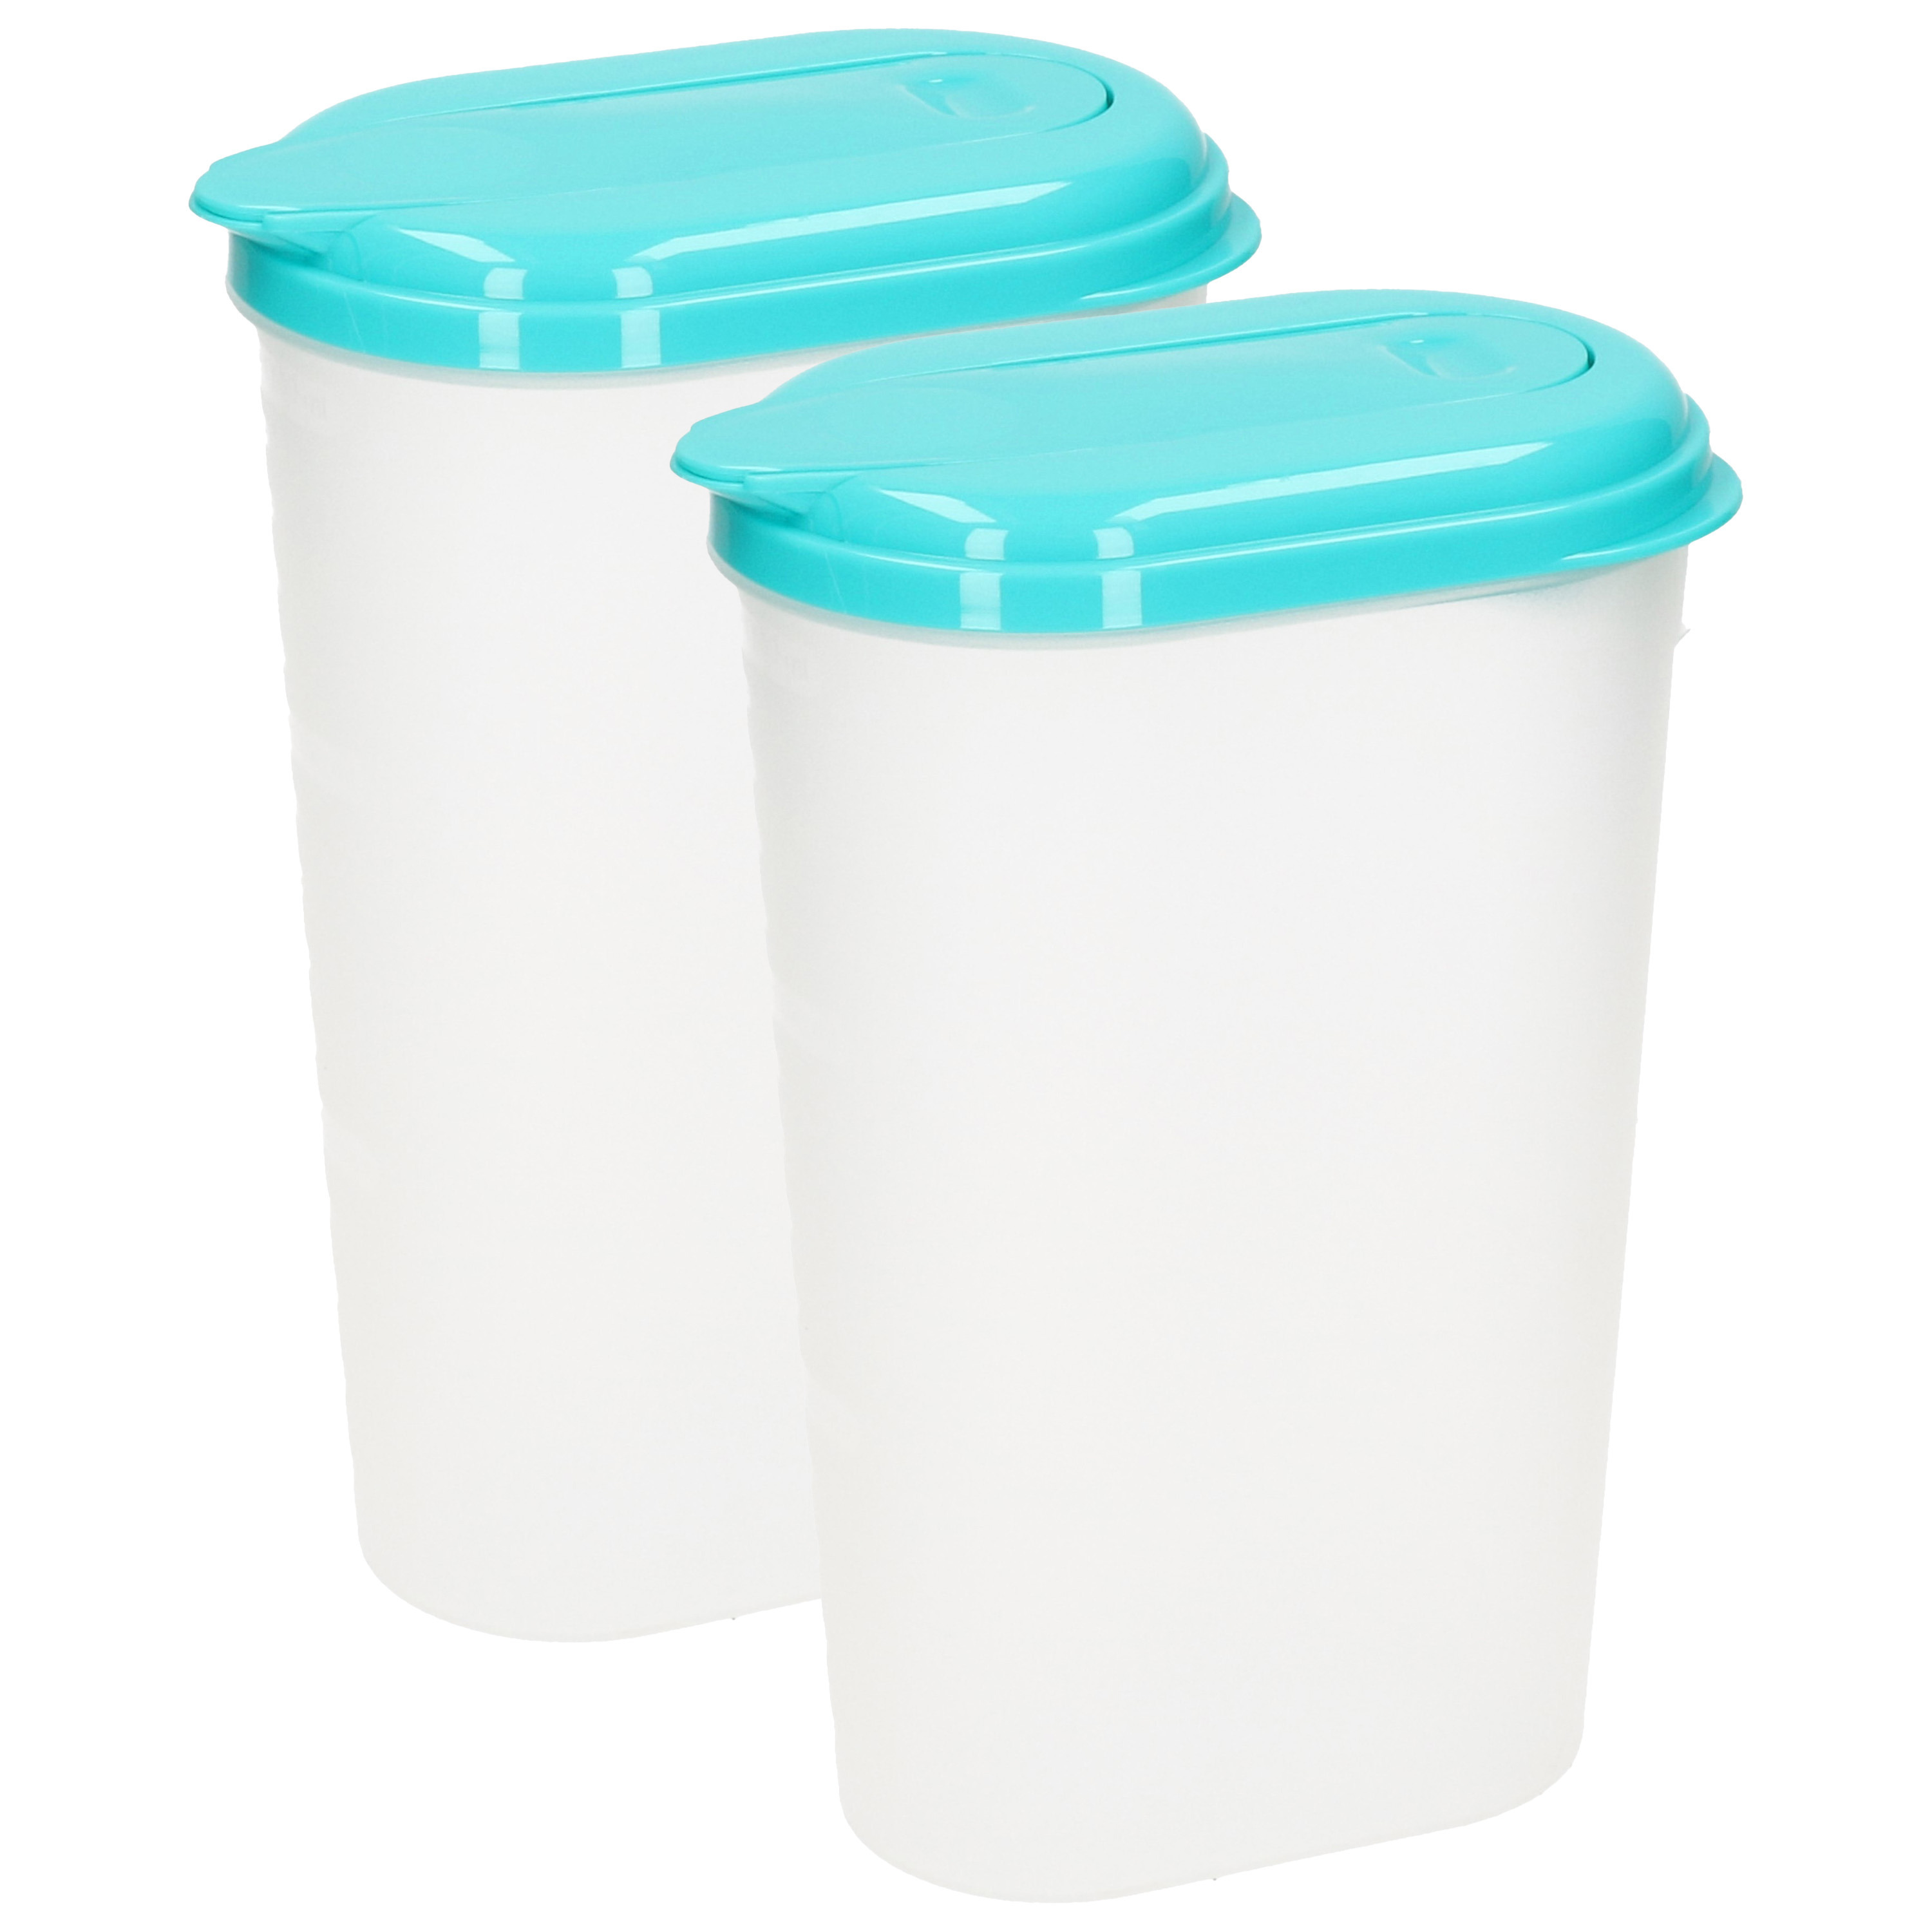 PlasticForte Waterkan/sapkan - 2x - transparant/aqua groen - met deksel - 1.6 liter - kunststof -